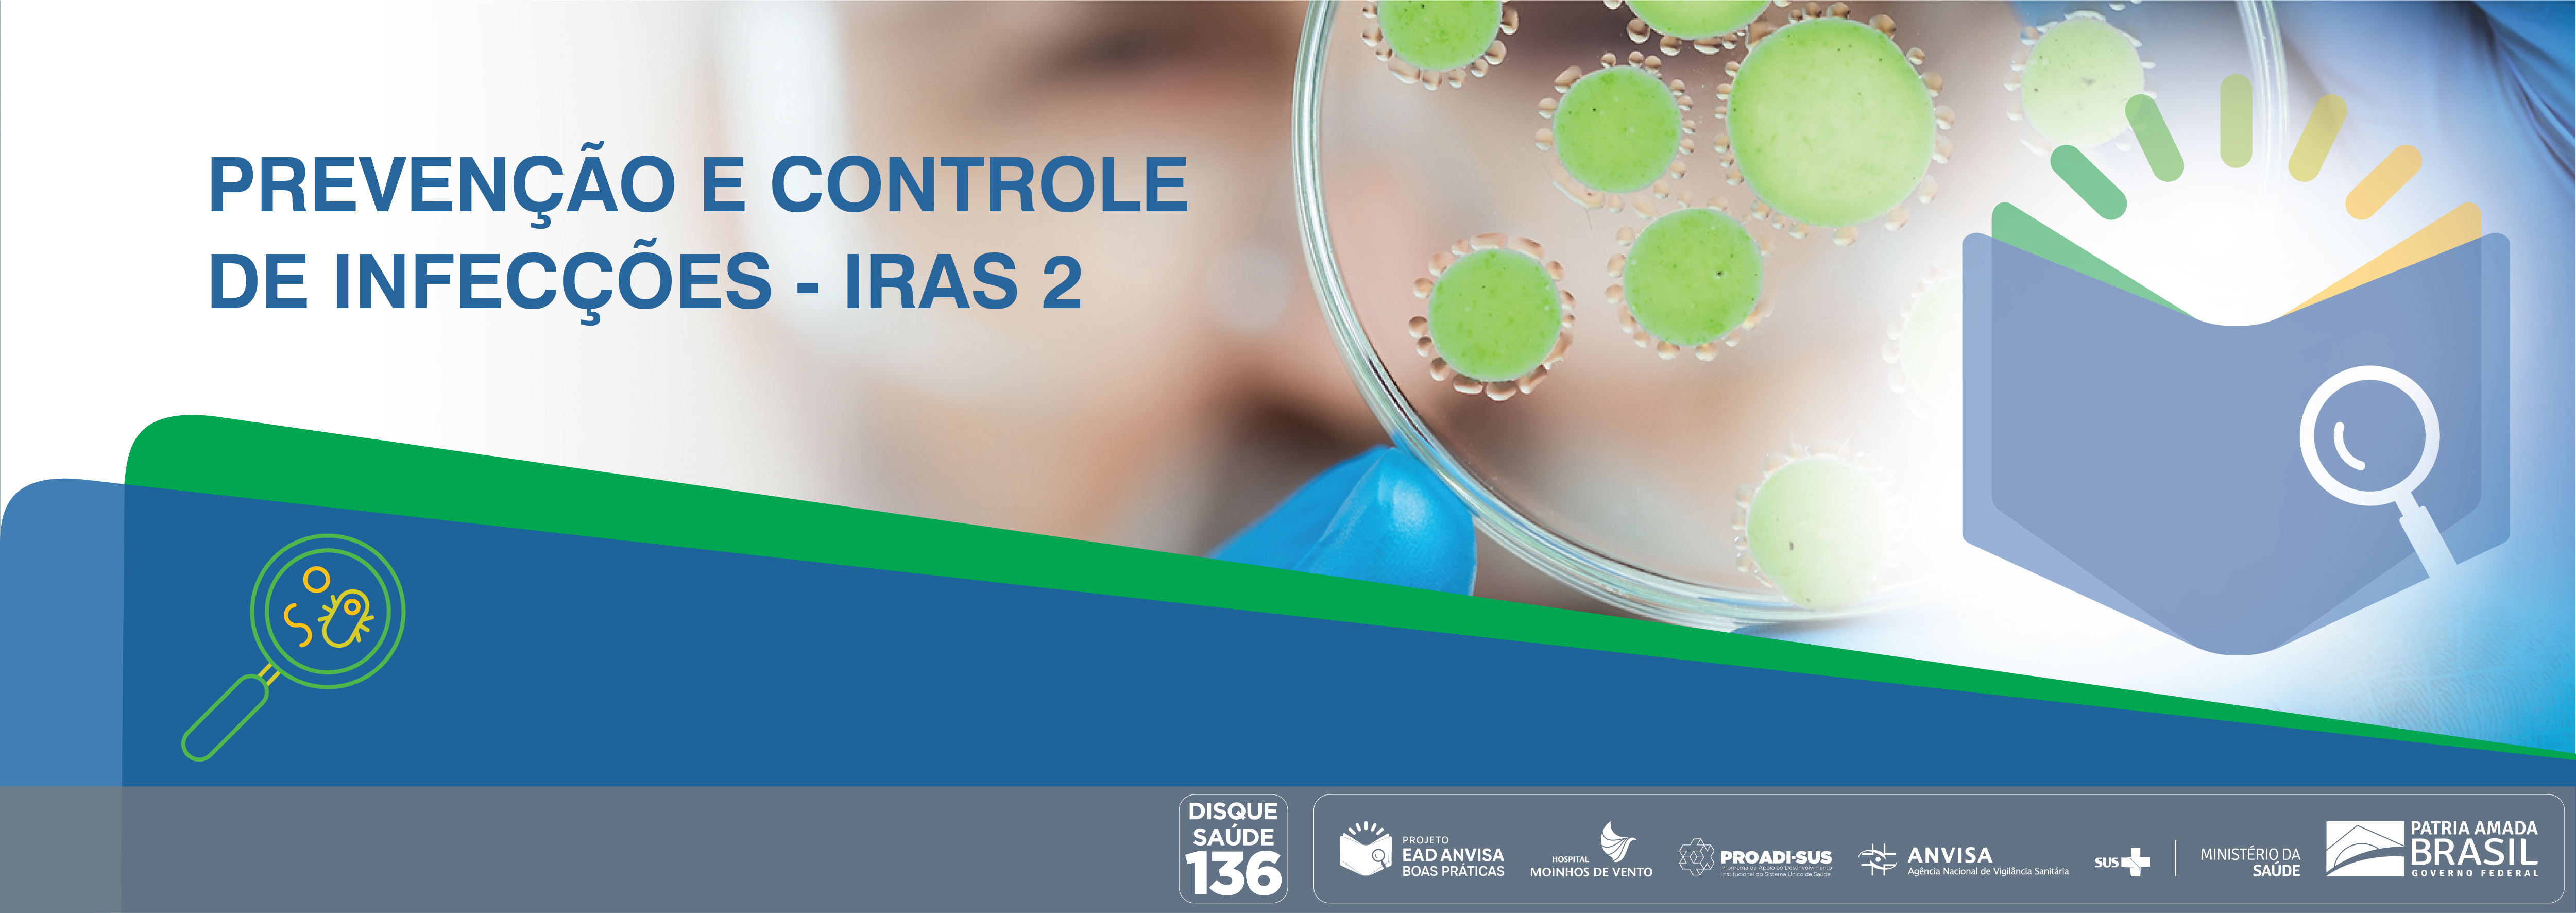 Boas Práticas de Inspeção em Serviços de Saúde com foco nas Ações de Prevenção e Controle das Infecções Relacionadas à Assistência à Saúde e Resistência Microbiana (RM) - Módulo 2 ANVISA_2021_IRAS2_V2